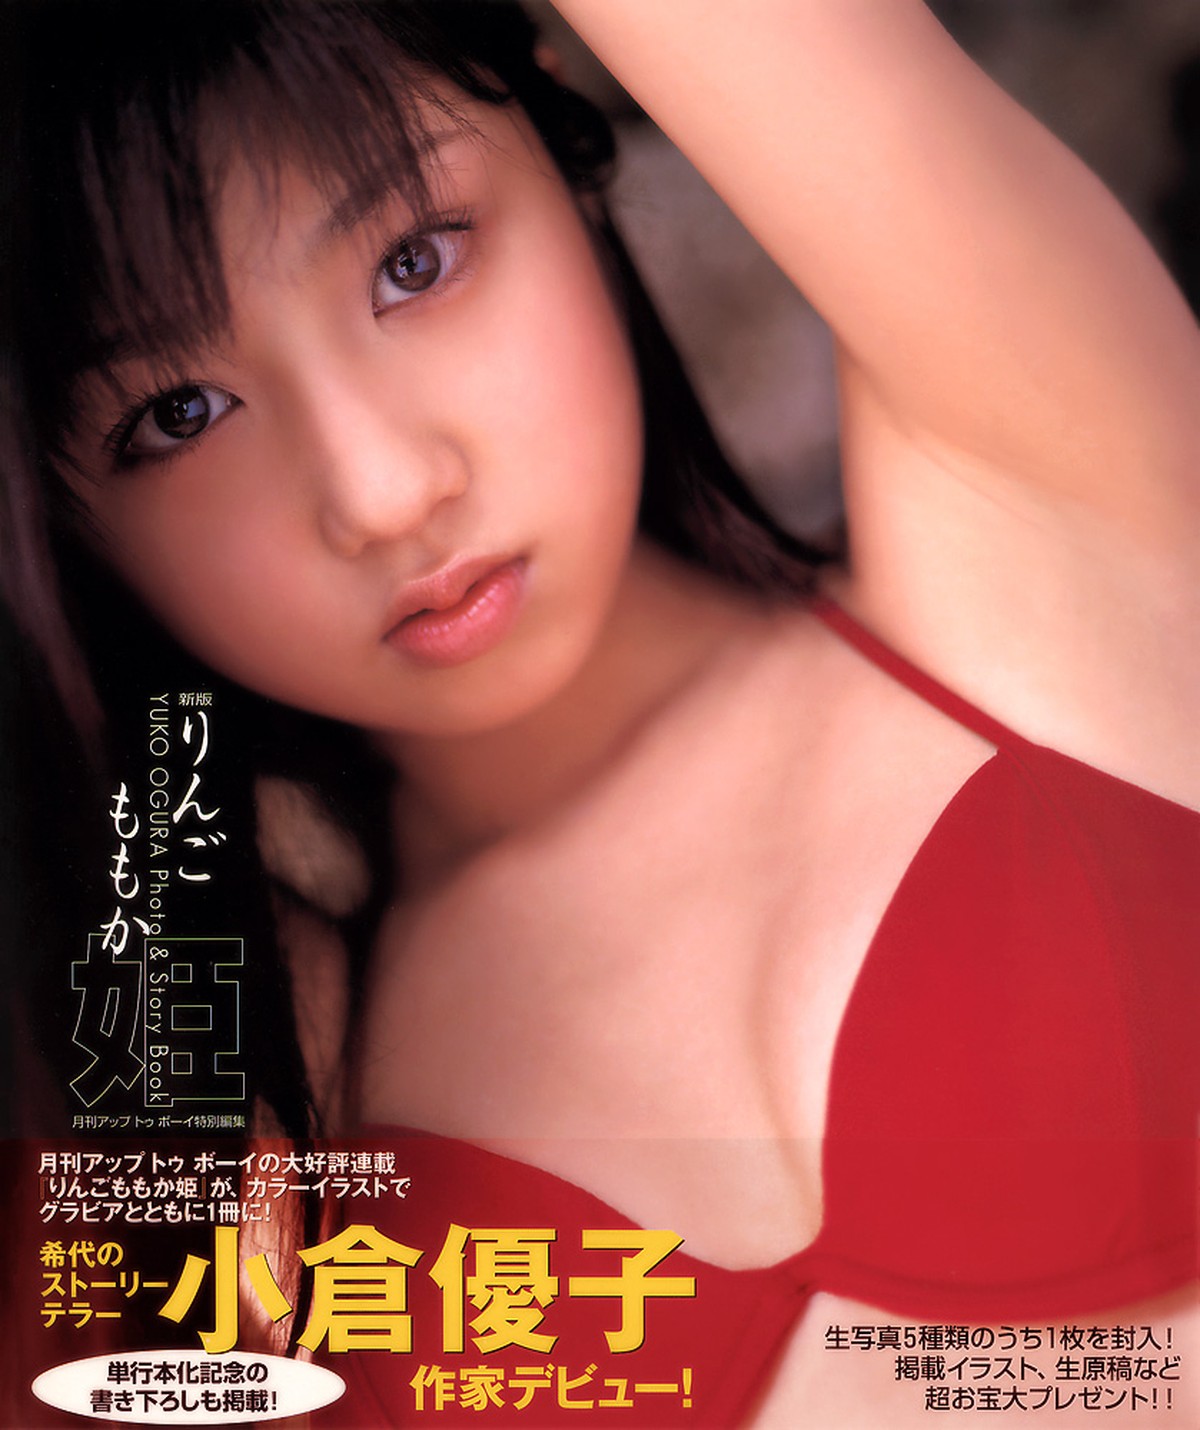 Photobook Yuko Ogura 小倉優子 Photo And Story Book Ringo Momoka Hime 0002 7851737564.jpg